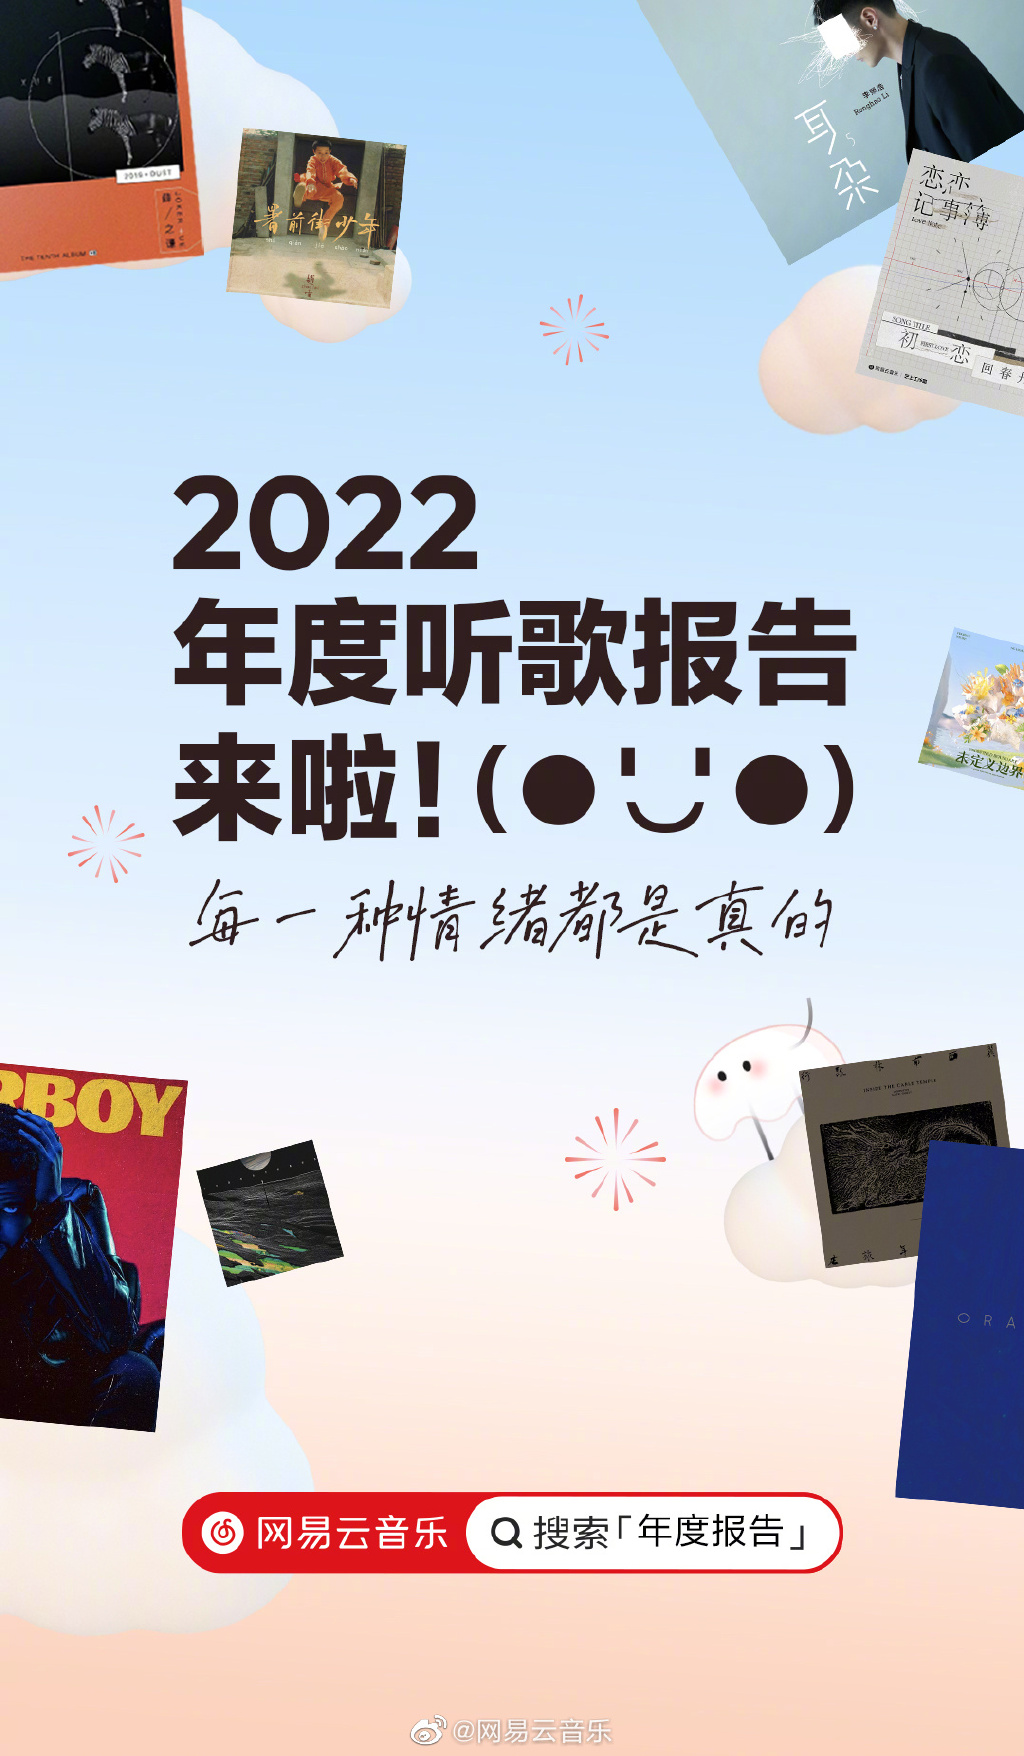 网易云音乐2022年度听歌报告在哪里 网易云音乐2022年度听歌报告地址